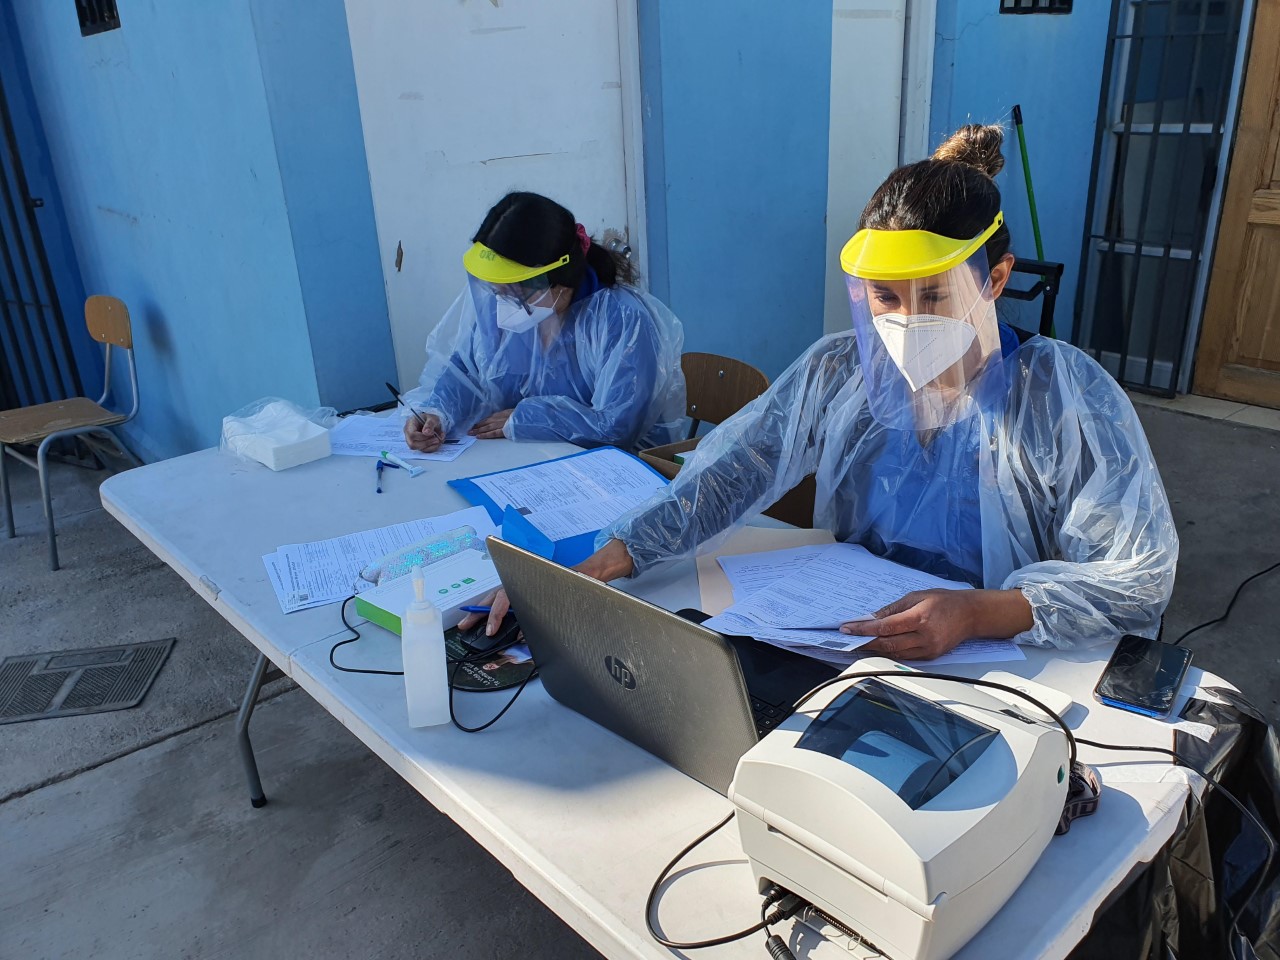 SAN FELIPE: Equipos del CESFAM Segismundo Iturra y CESCOF realizaron en terreno operativos de pesquisa activa de COVID-19